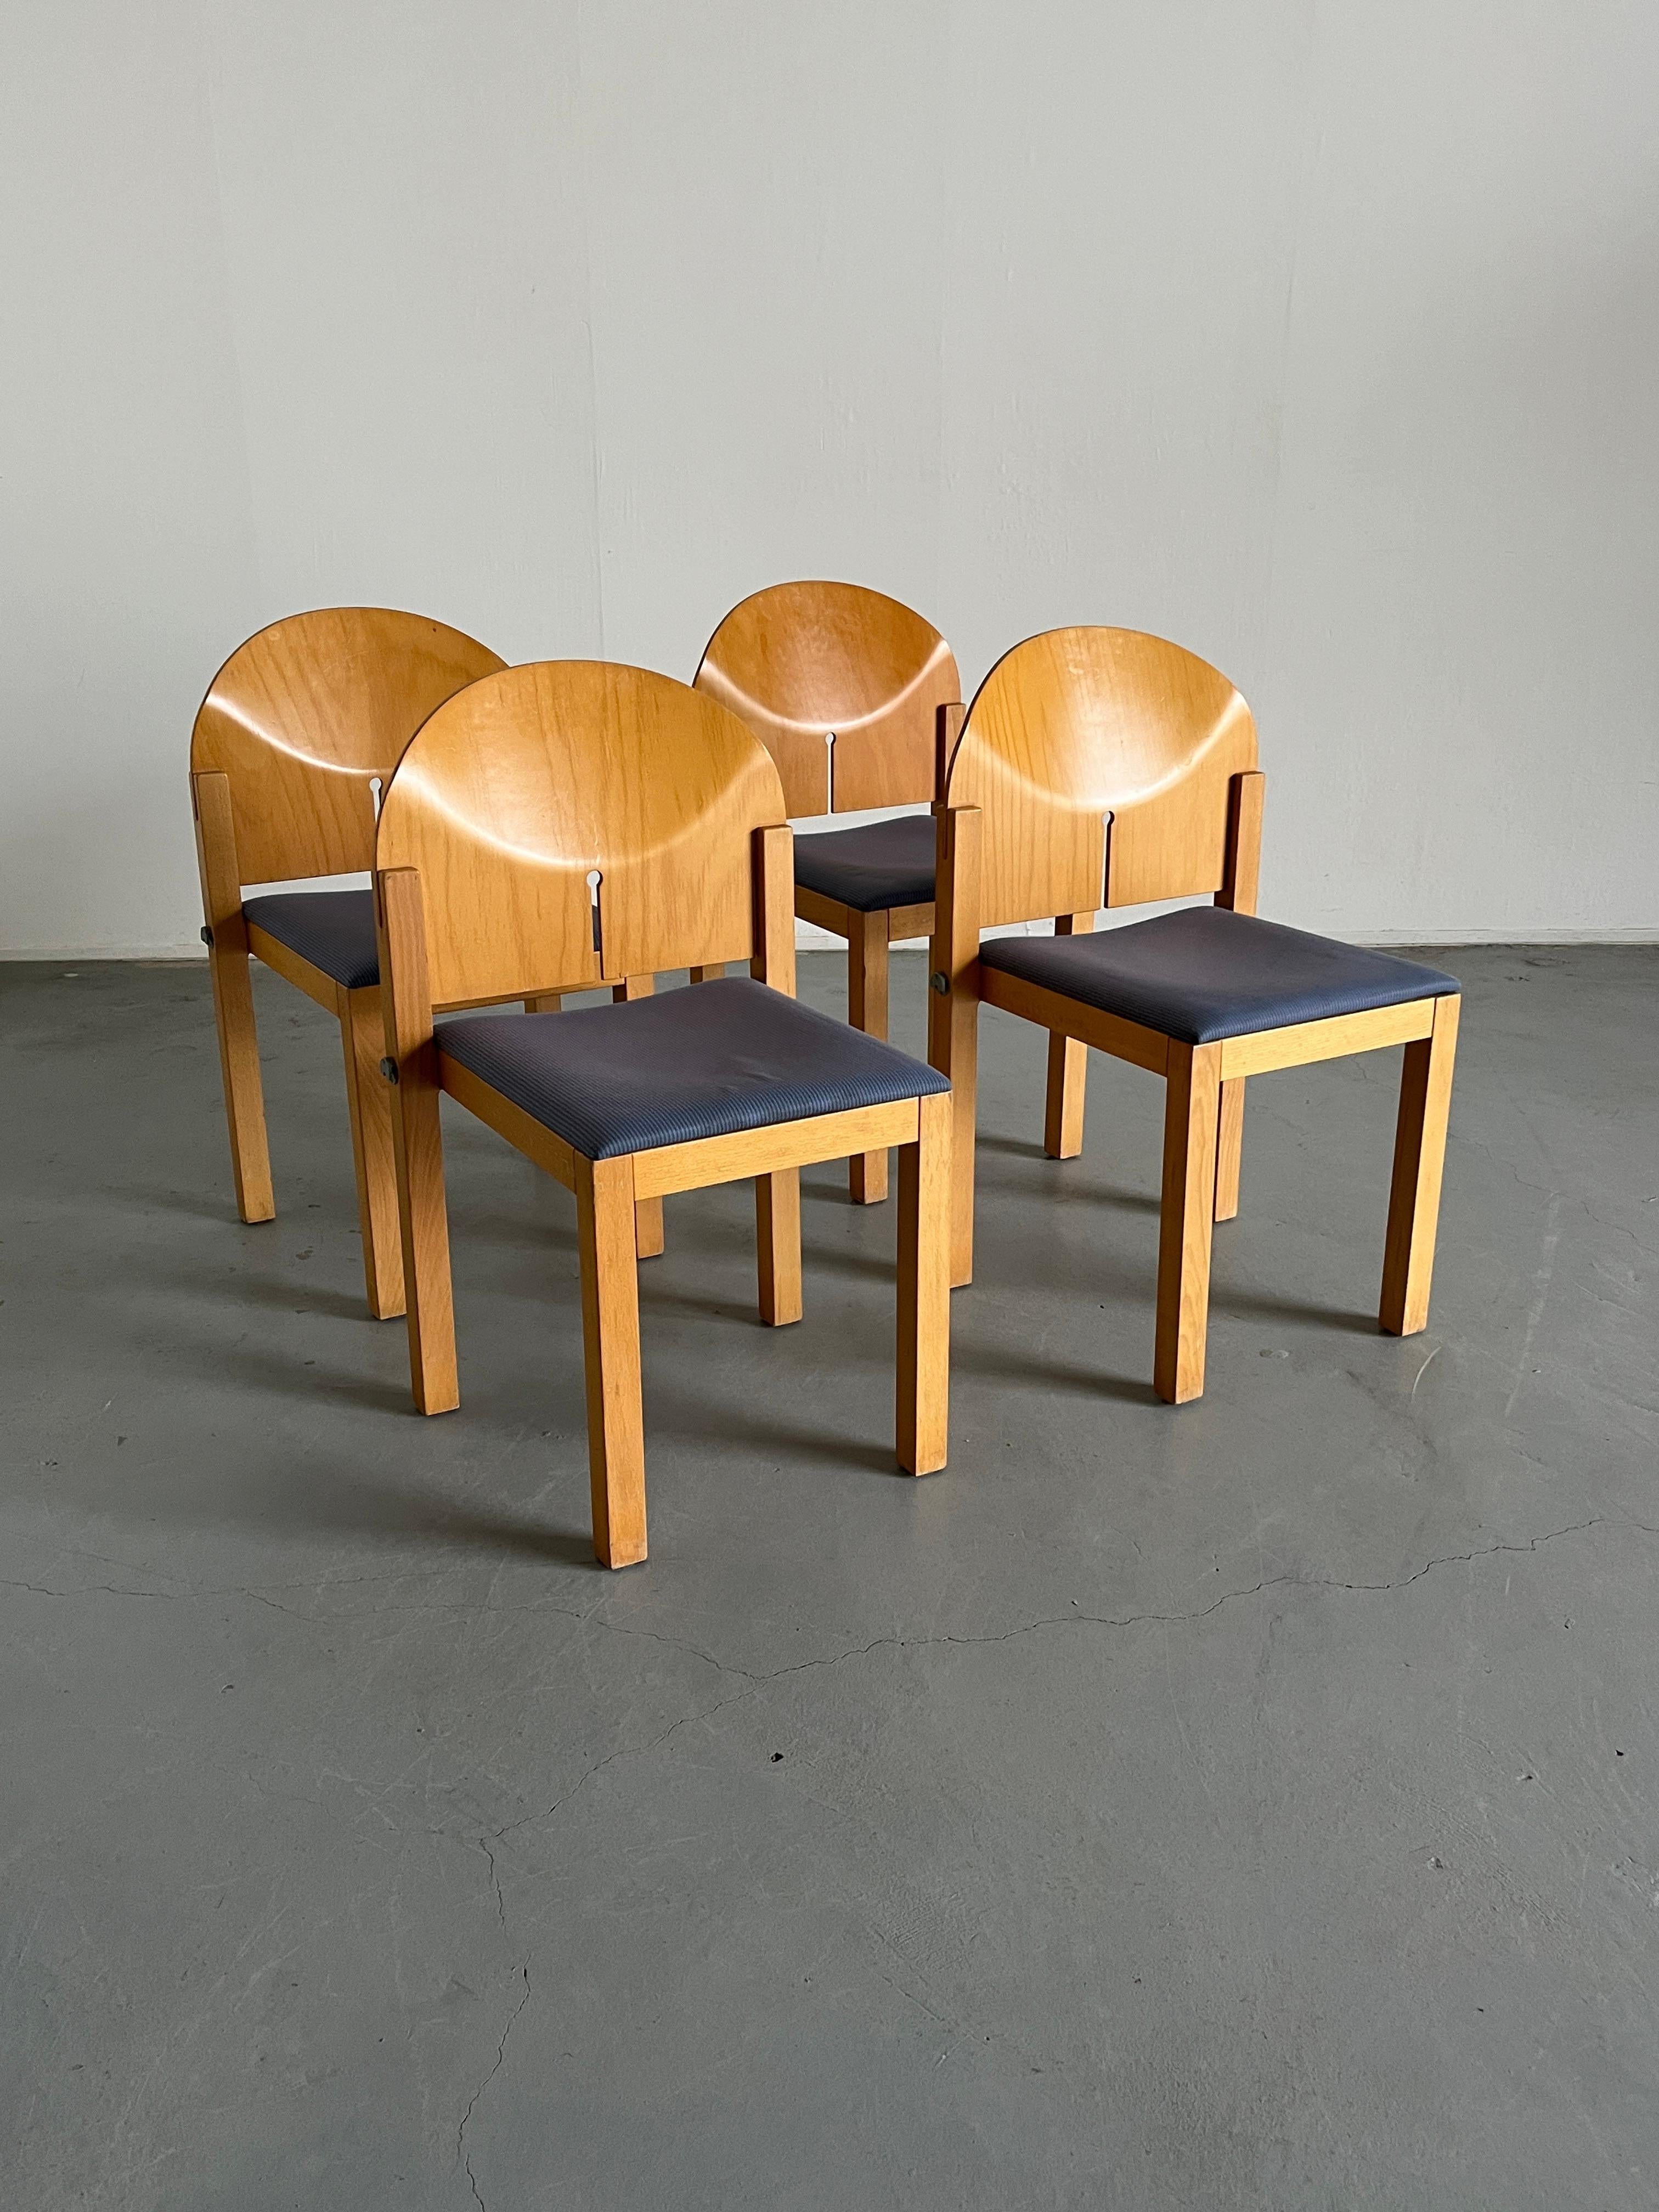 Ensemble de quatre belles chaises de salle à manger postmodernes des années 1980 par Arno Votteler pour Bisterfeld et Weiss.
Haute qualité de production.
Rappelant les designs d'Afra et Tobia Scarpa pour B&B Italia dans les années 1970.
Peut être